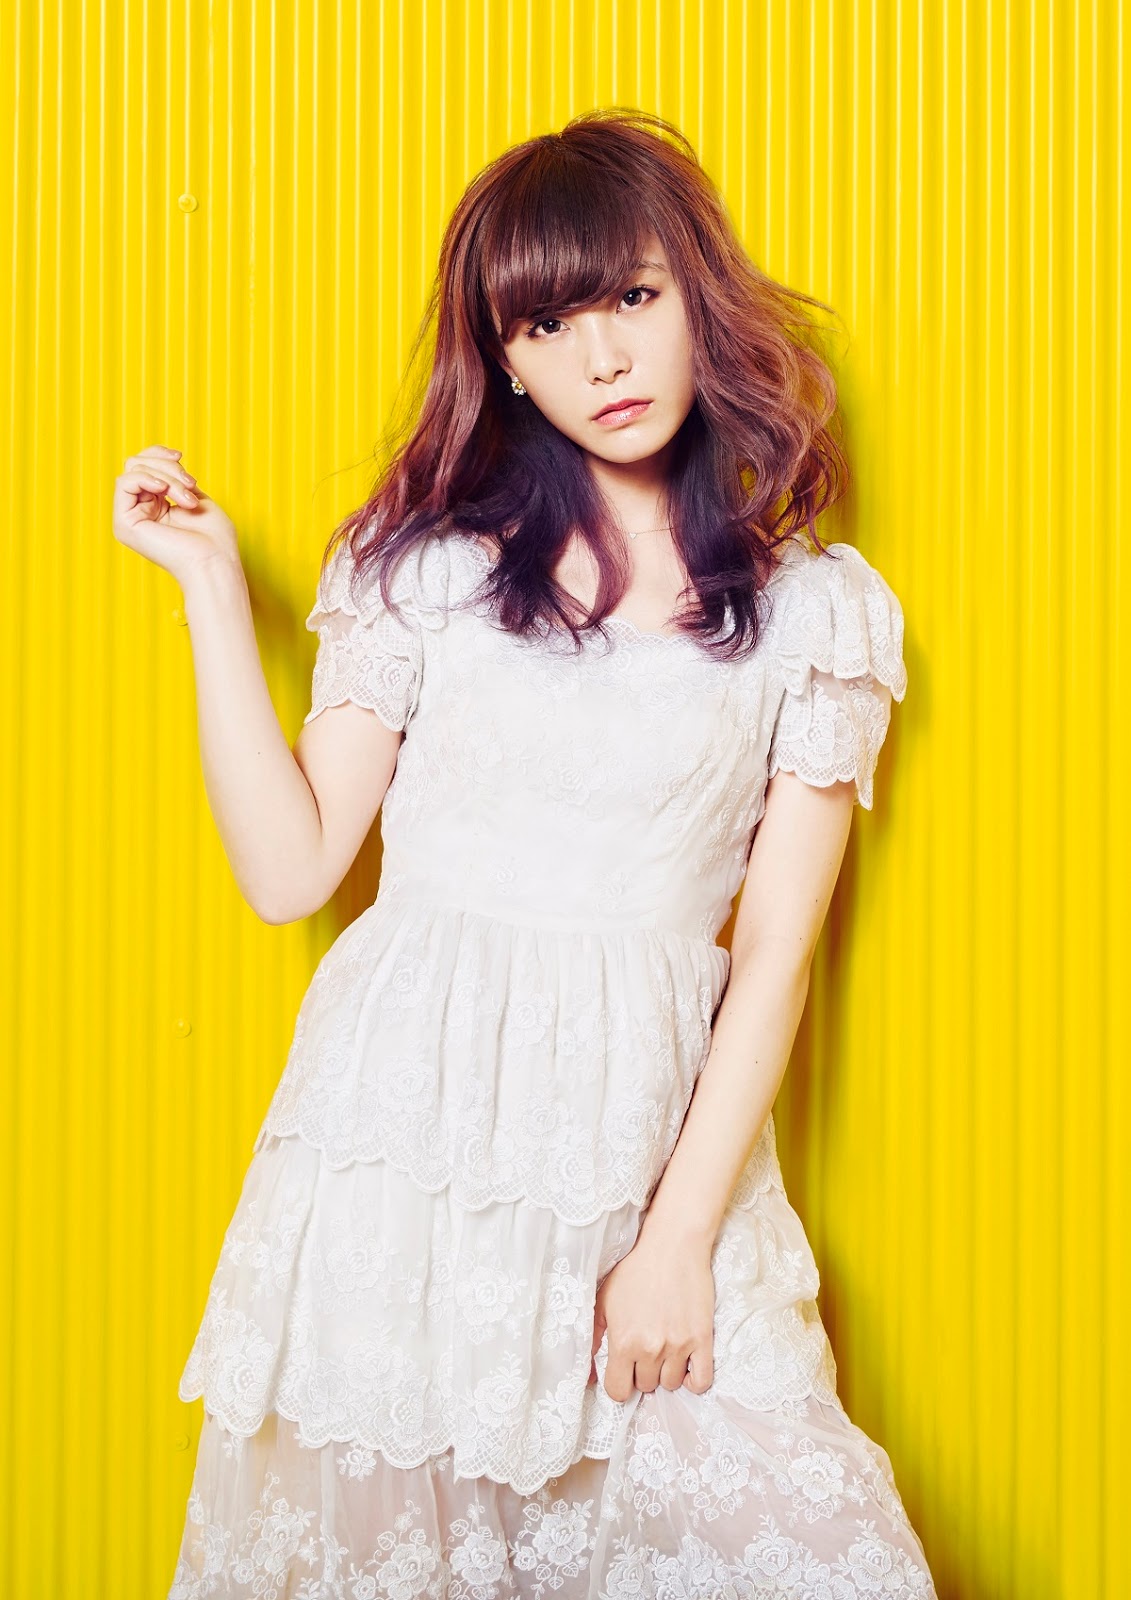 Rina Suzuki Scandal Yellow Album Scandal Japan Band Wallpaper